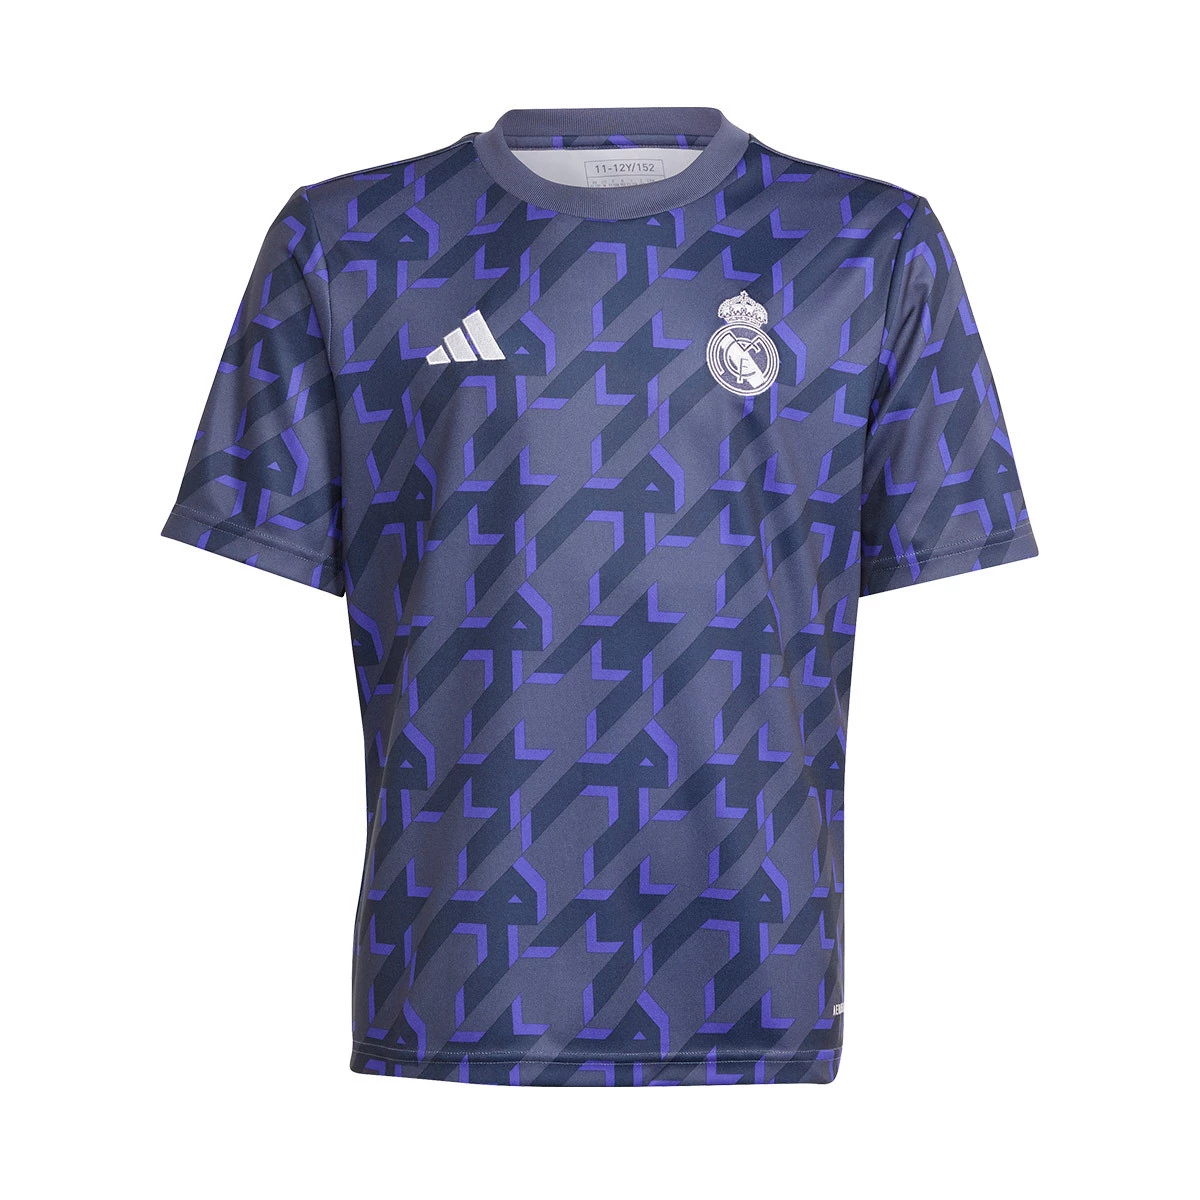 Camisetas y equipaciones del Real Madrid para niños 2023 / 2024 - Fútbol  Emotion